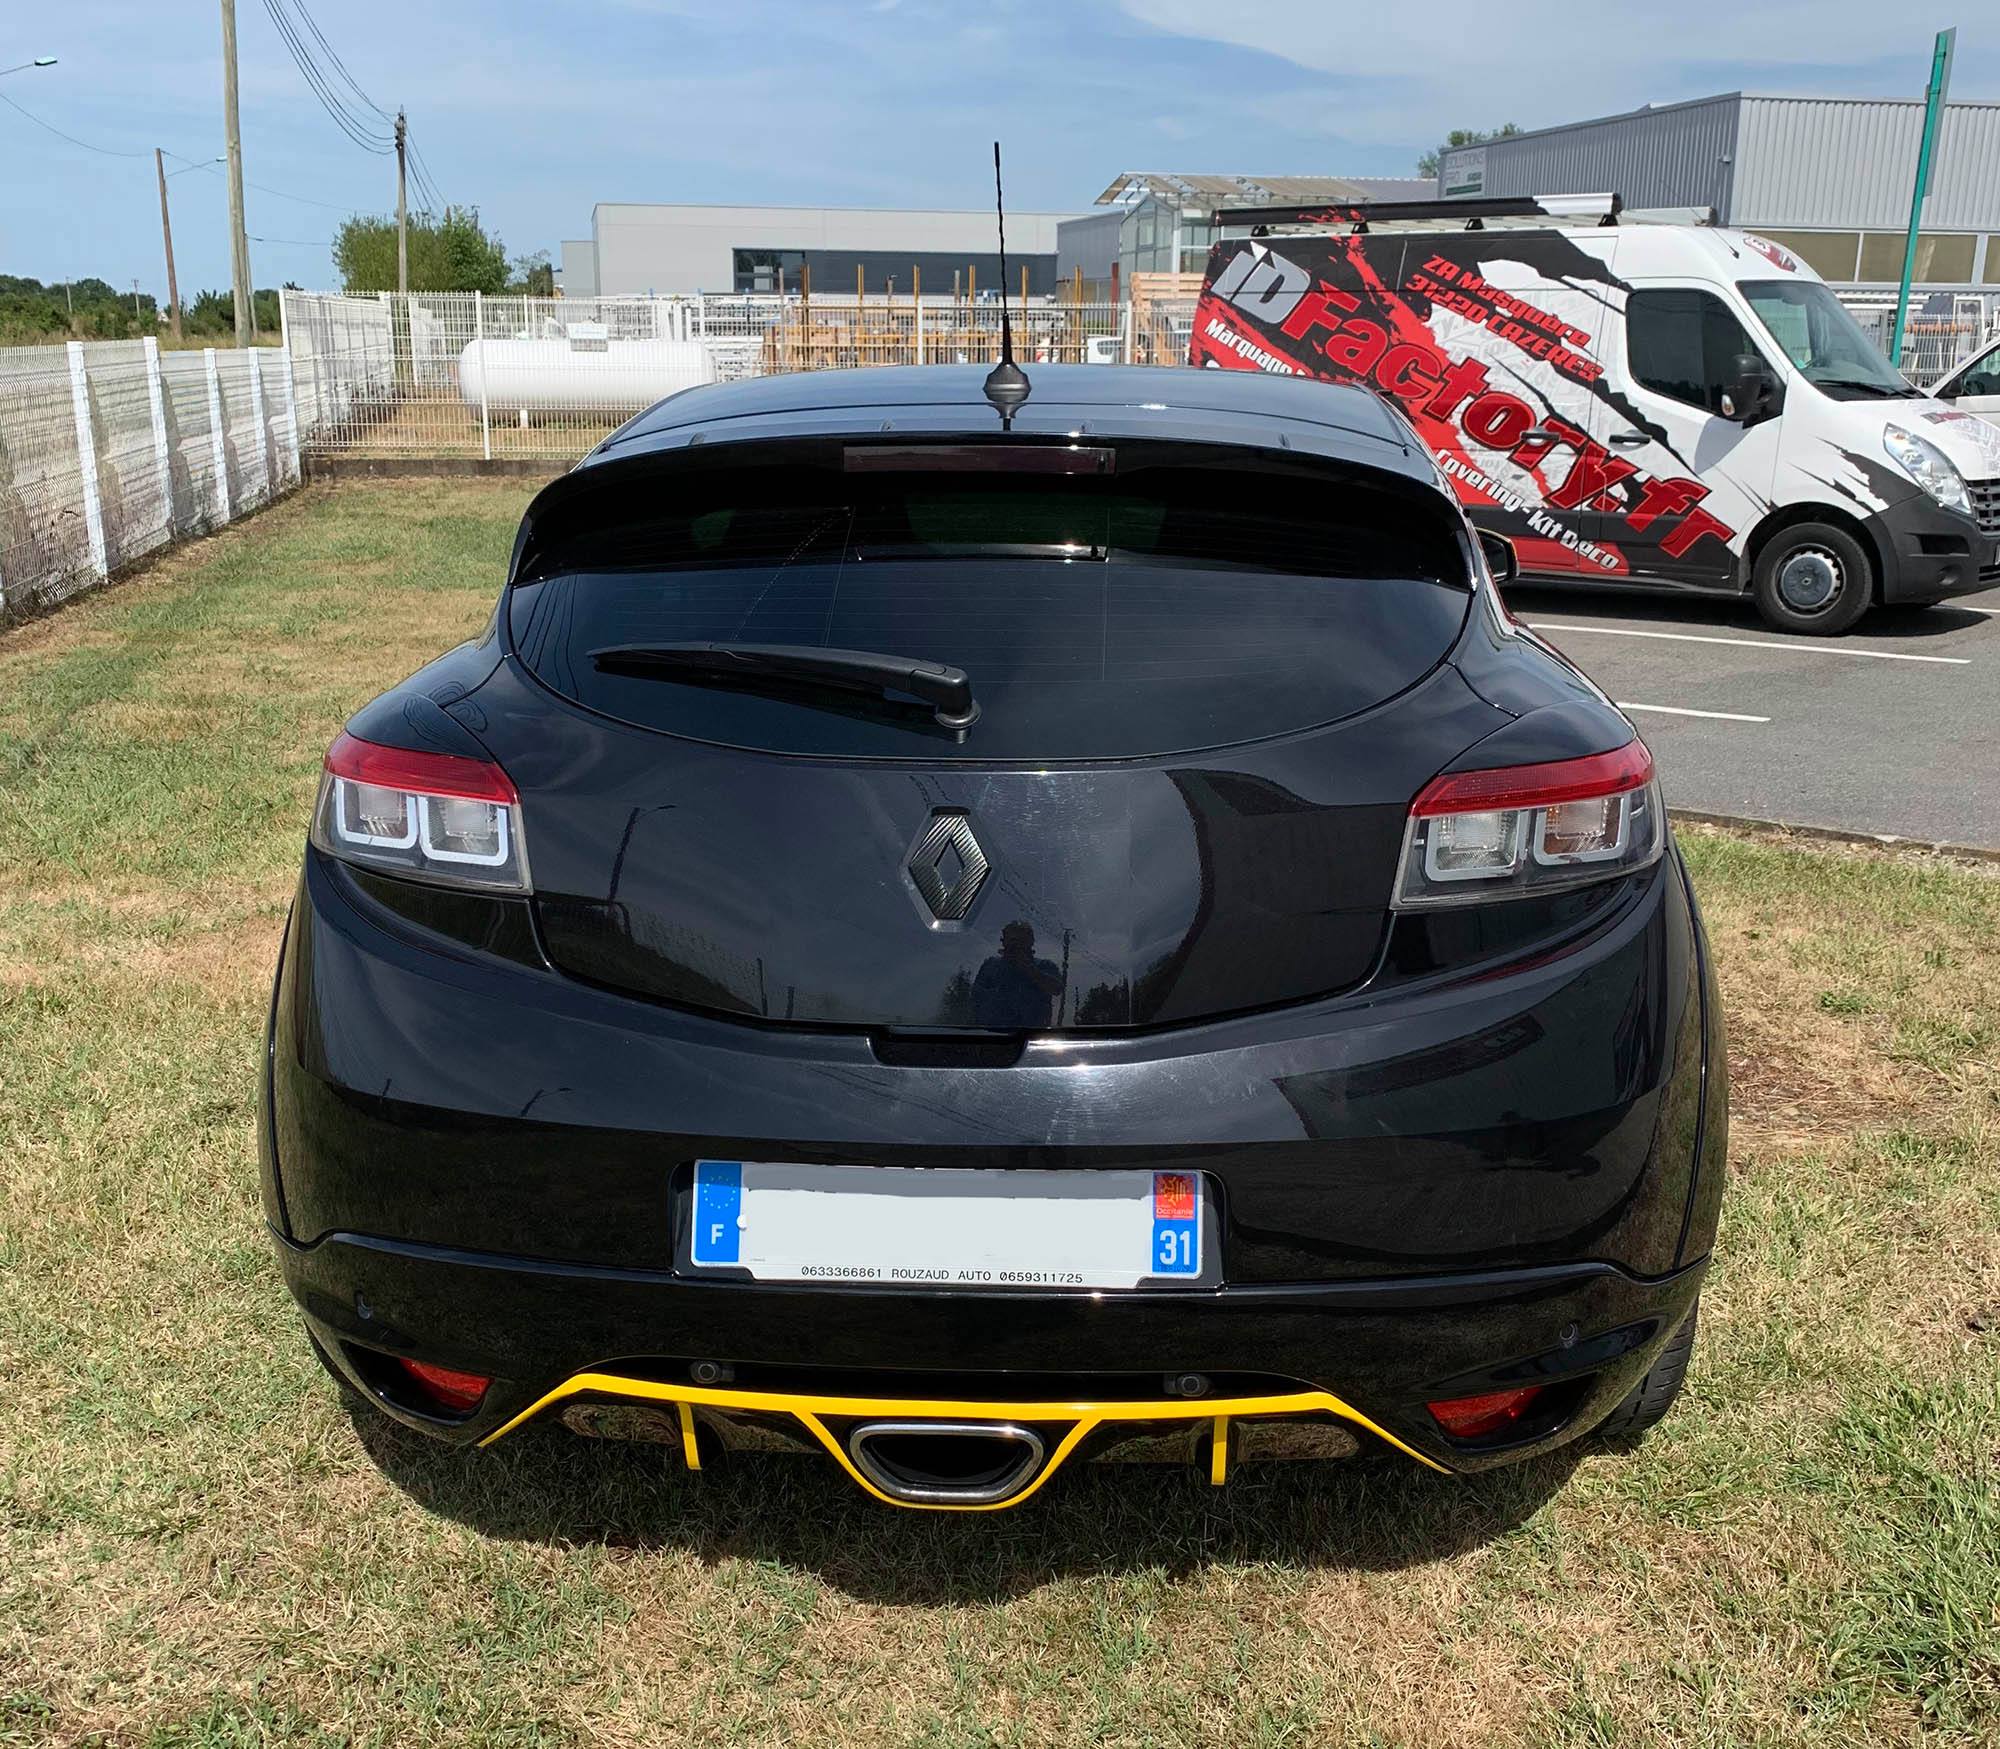 Covering sur Renault Mégane RS - ID Factory - impression Numérique